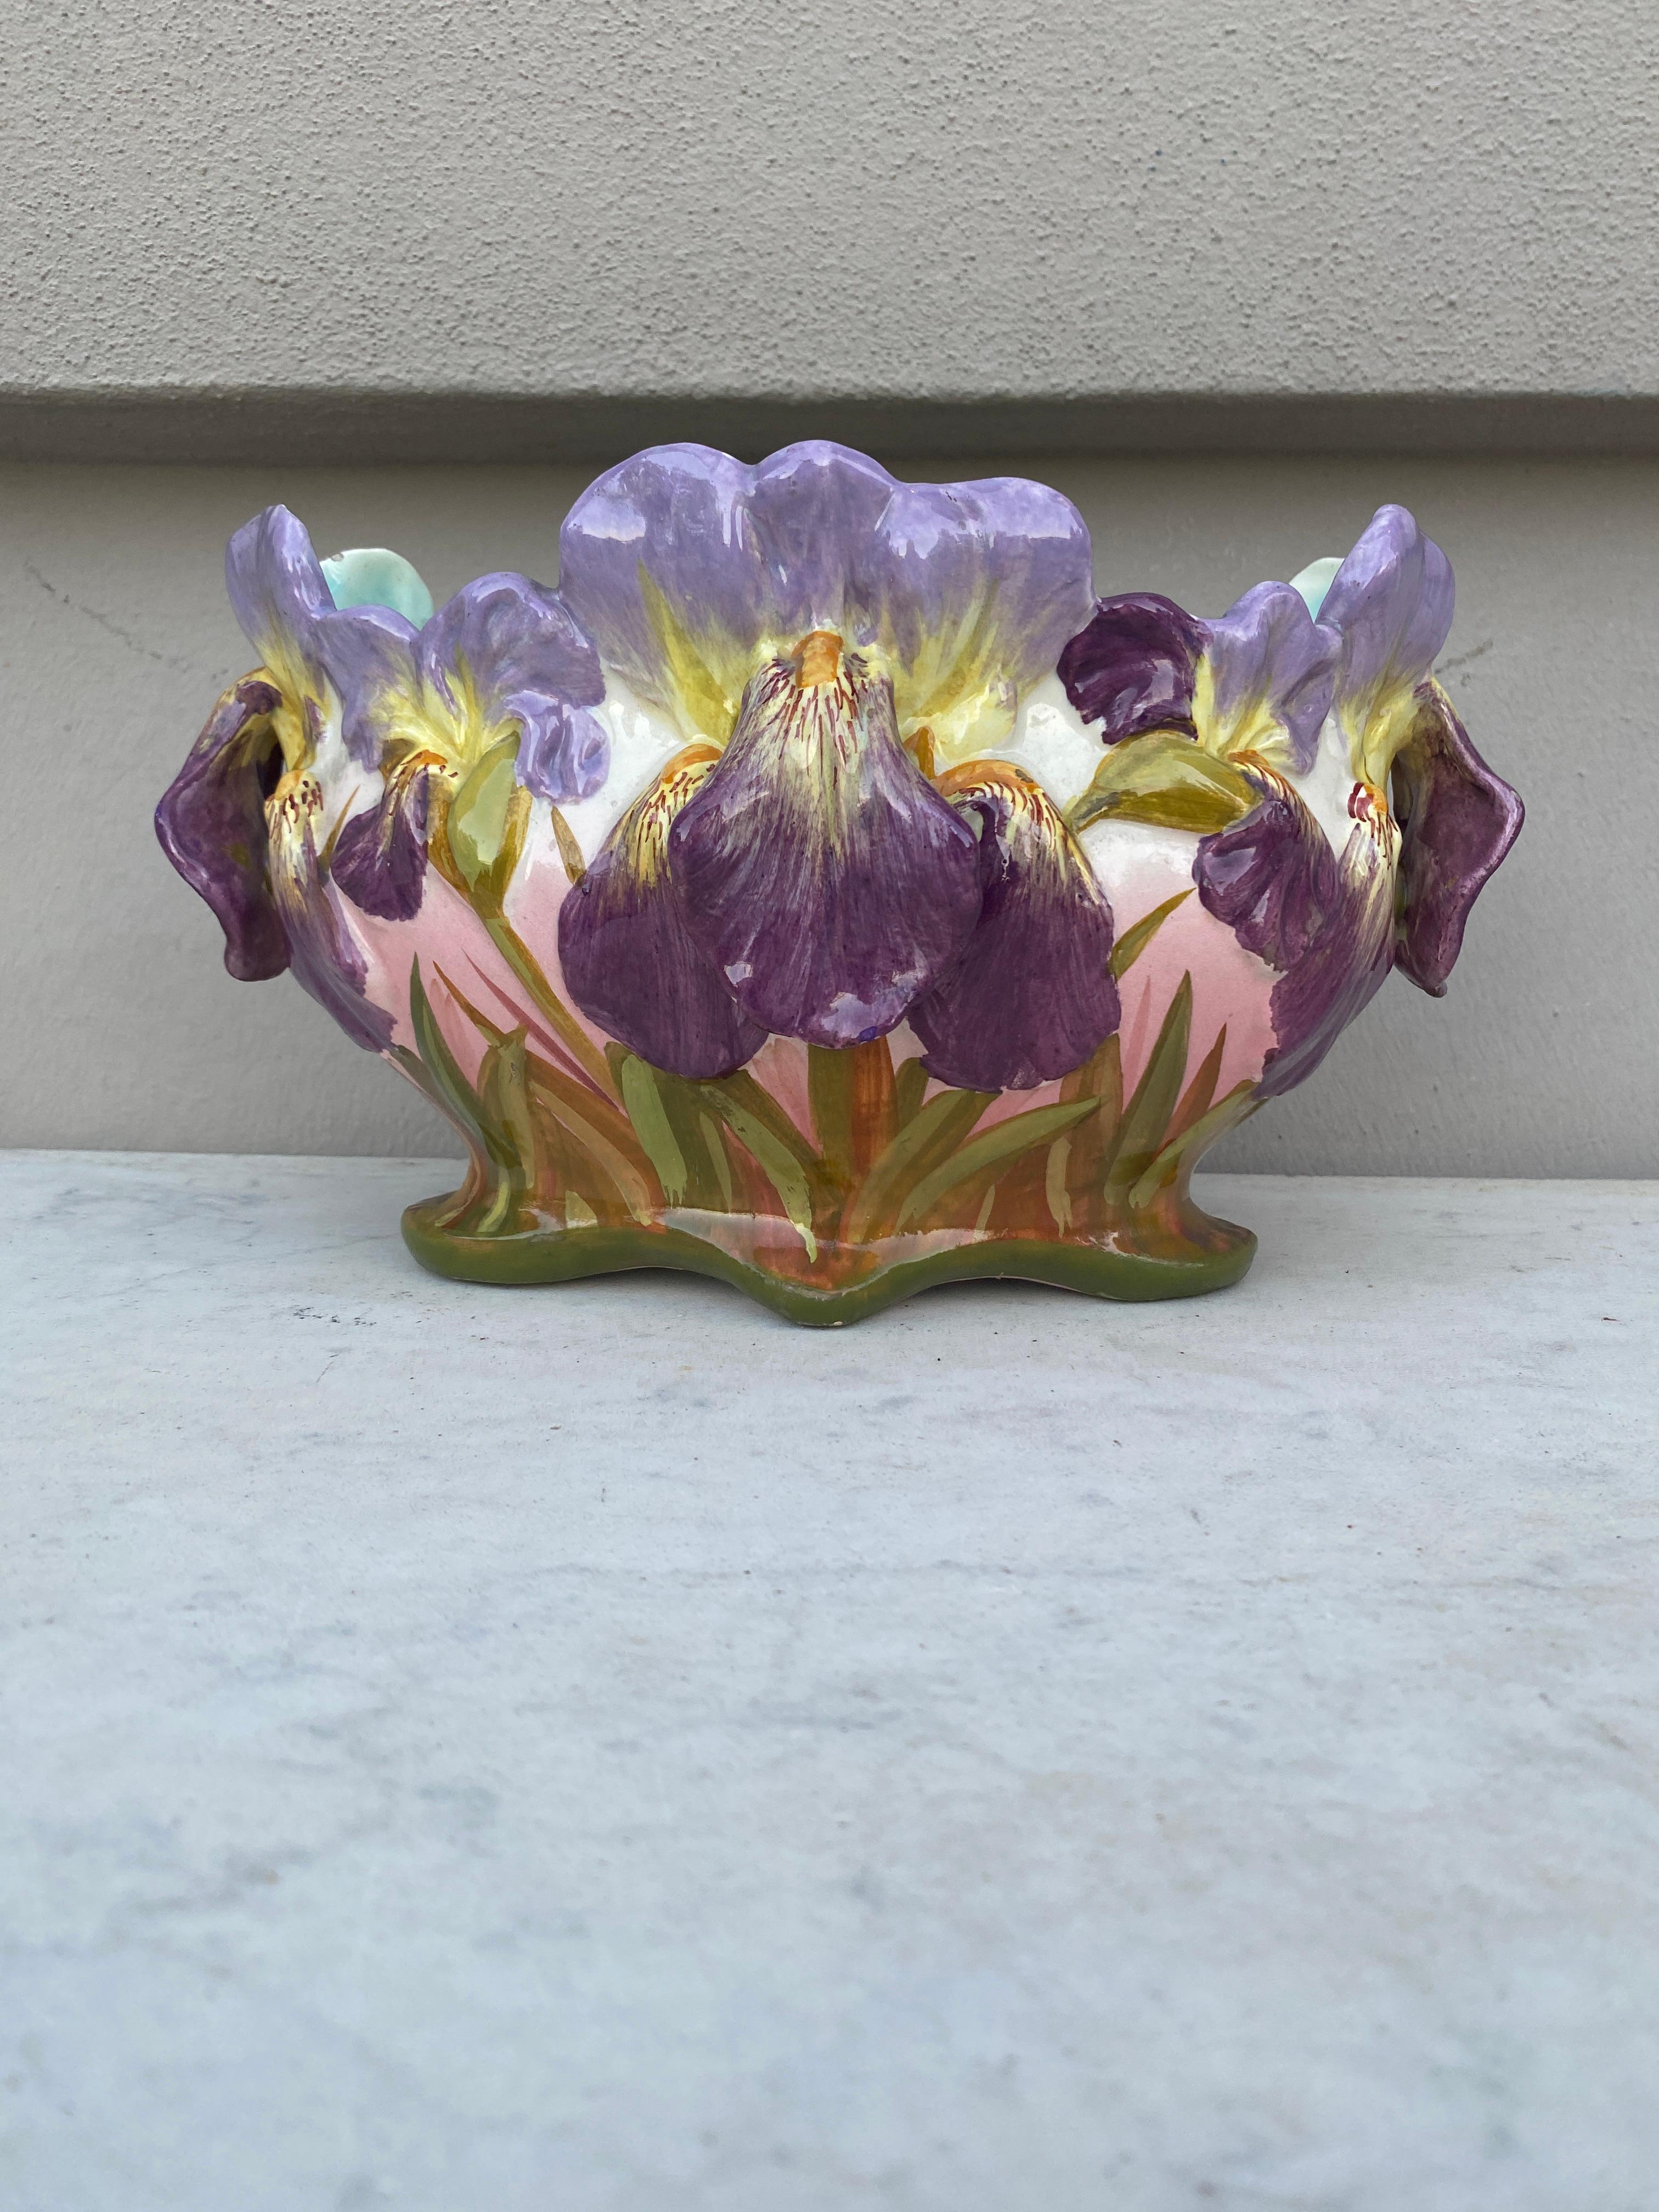 Kleine ovale Majolika-Iris-Jardiniere aus Frankreich, signiert Jerome Massier Fils, um 1900.
Die Familie Massier ist bekannt für die Qualität ihrer einzigartigen Emaillen und Gemälde. Sie produzierten eine unglaubliche Vielfalt an Blumen wie Iris,